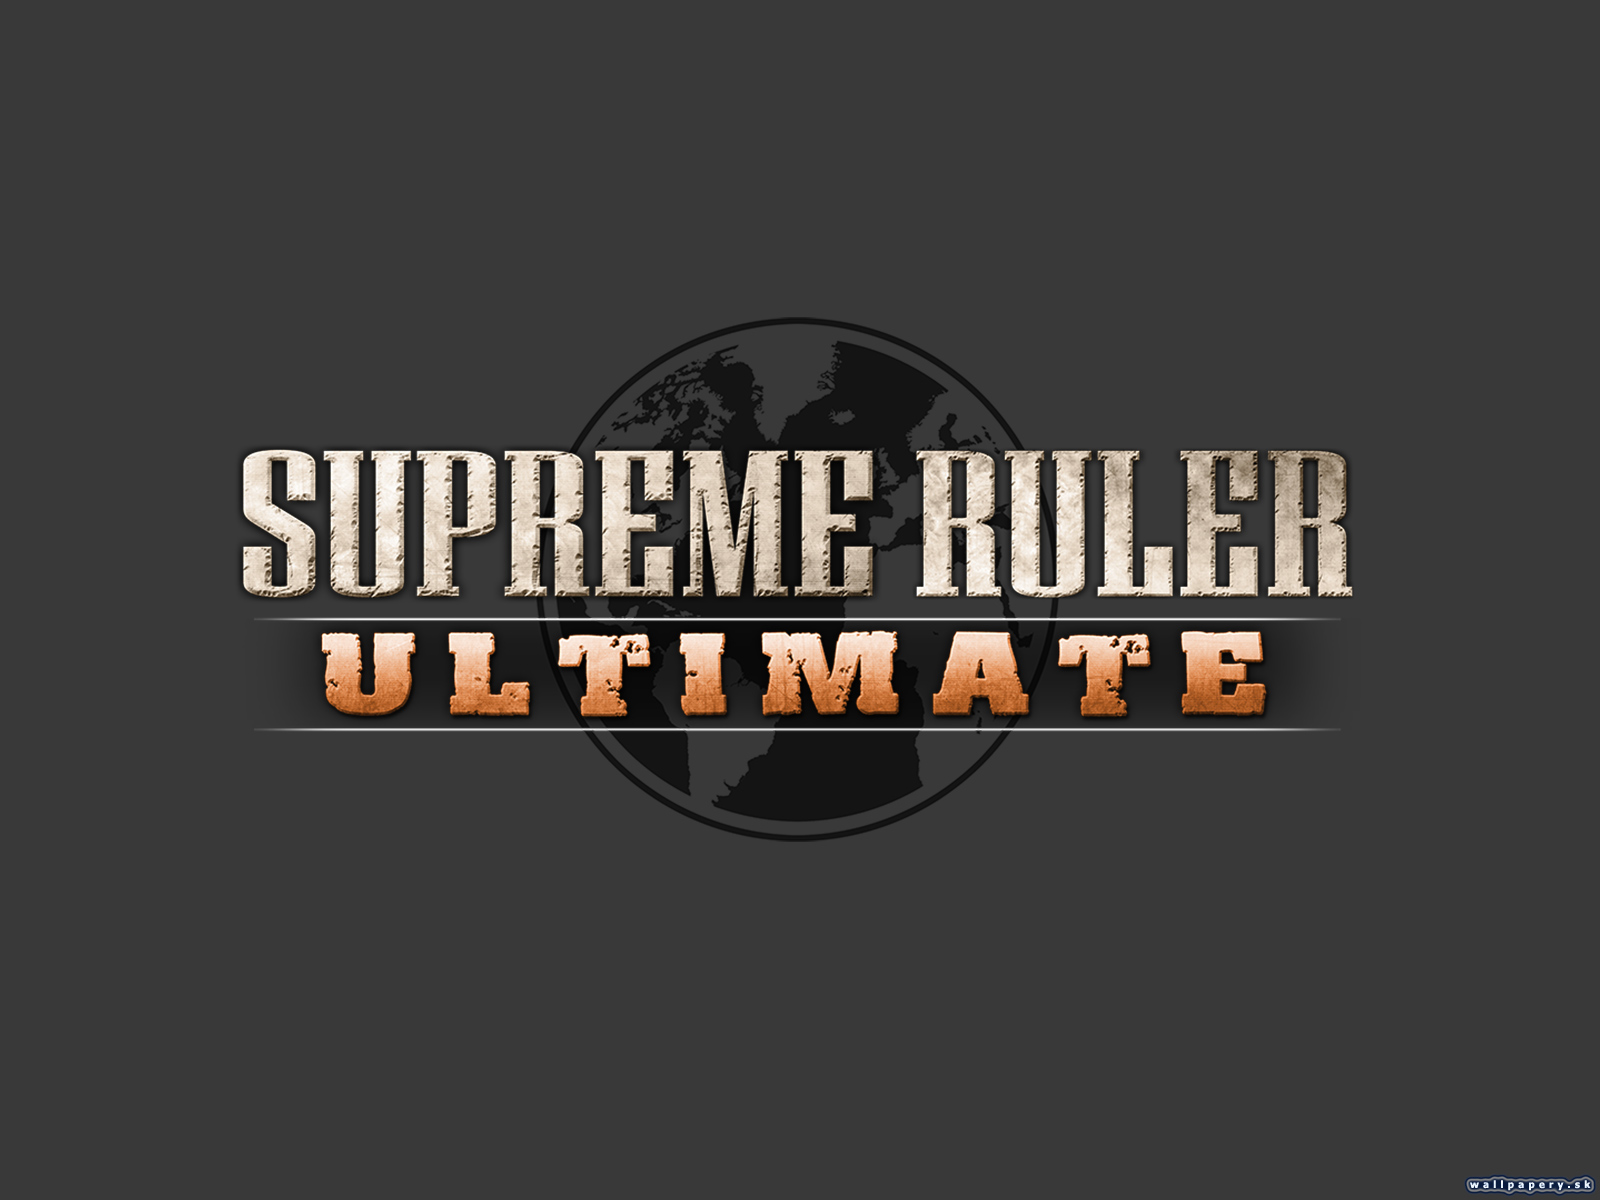 Supreme Ruler Ultimate - wallpaper 2